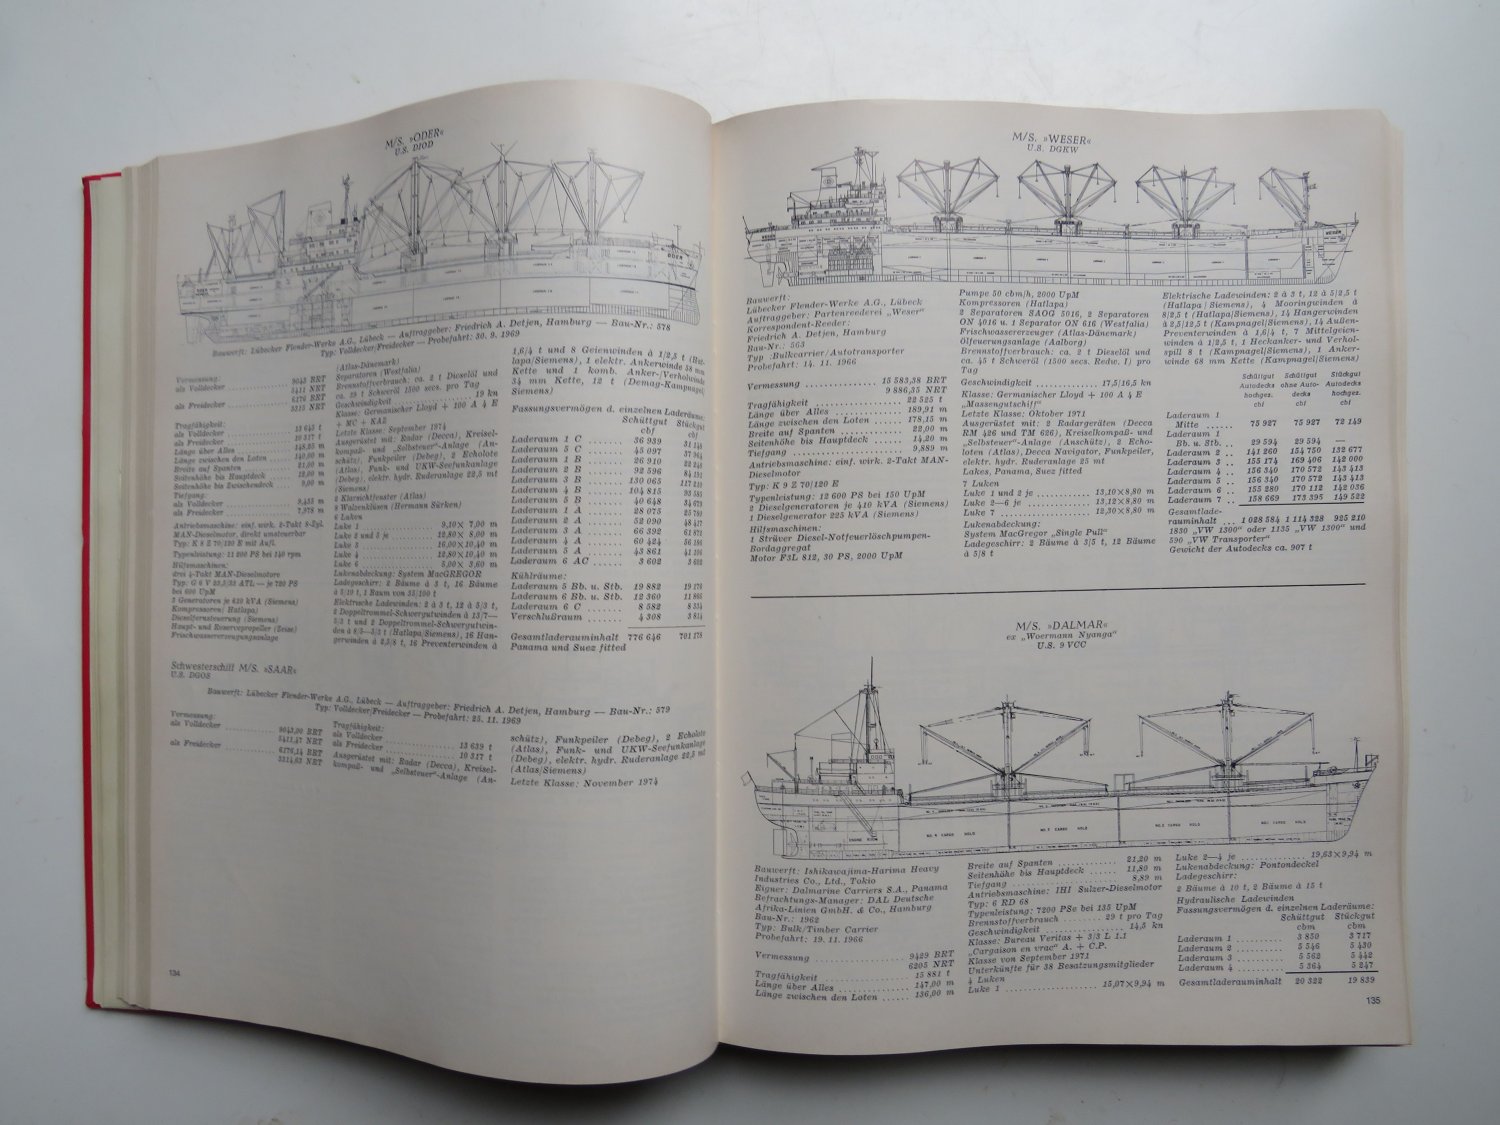 Die deutsche Handelsflotte 1976/77“ (Blumenfeld Erik) – Buch gebraucht  kaufen – A02q8Mqc01ZZj